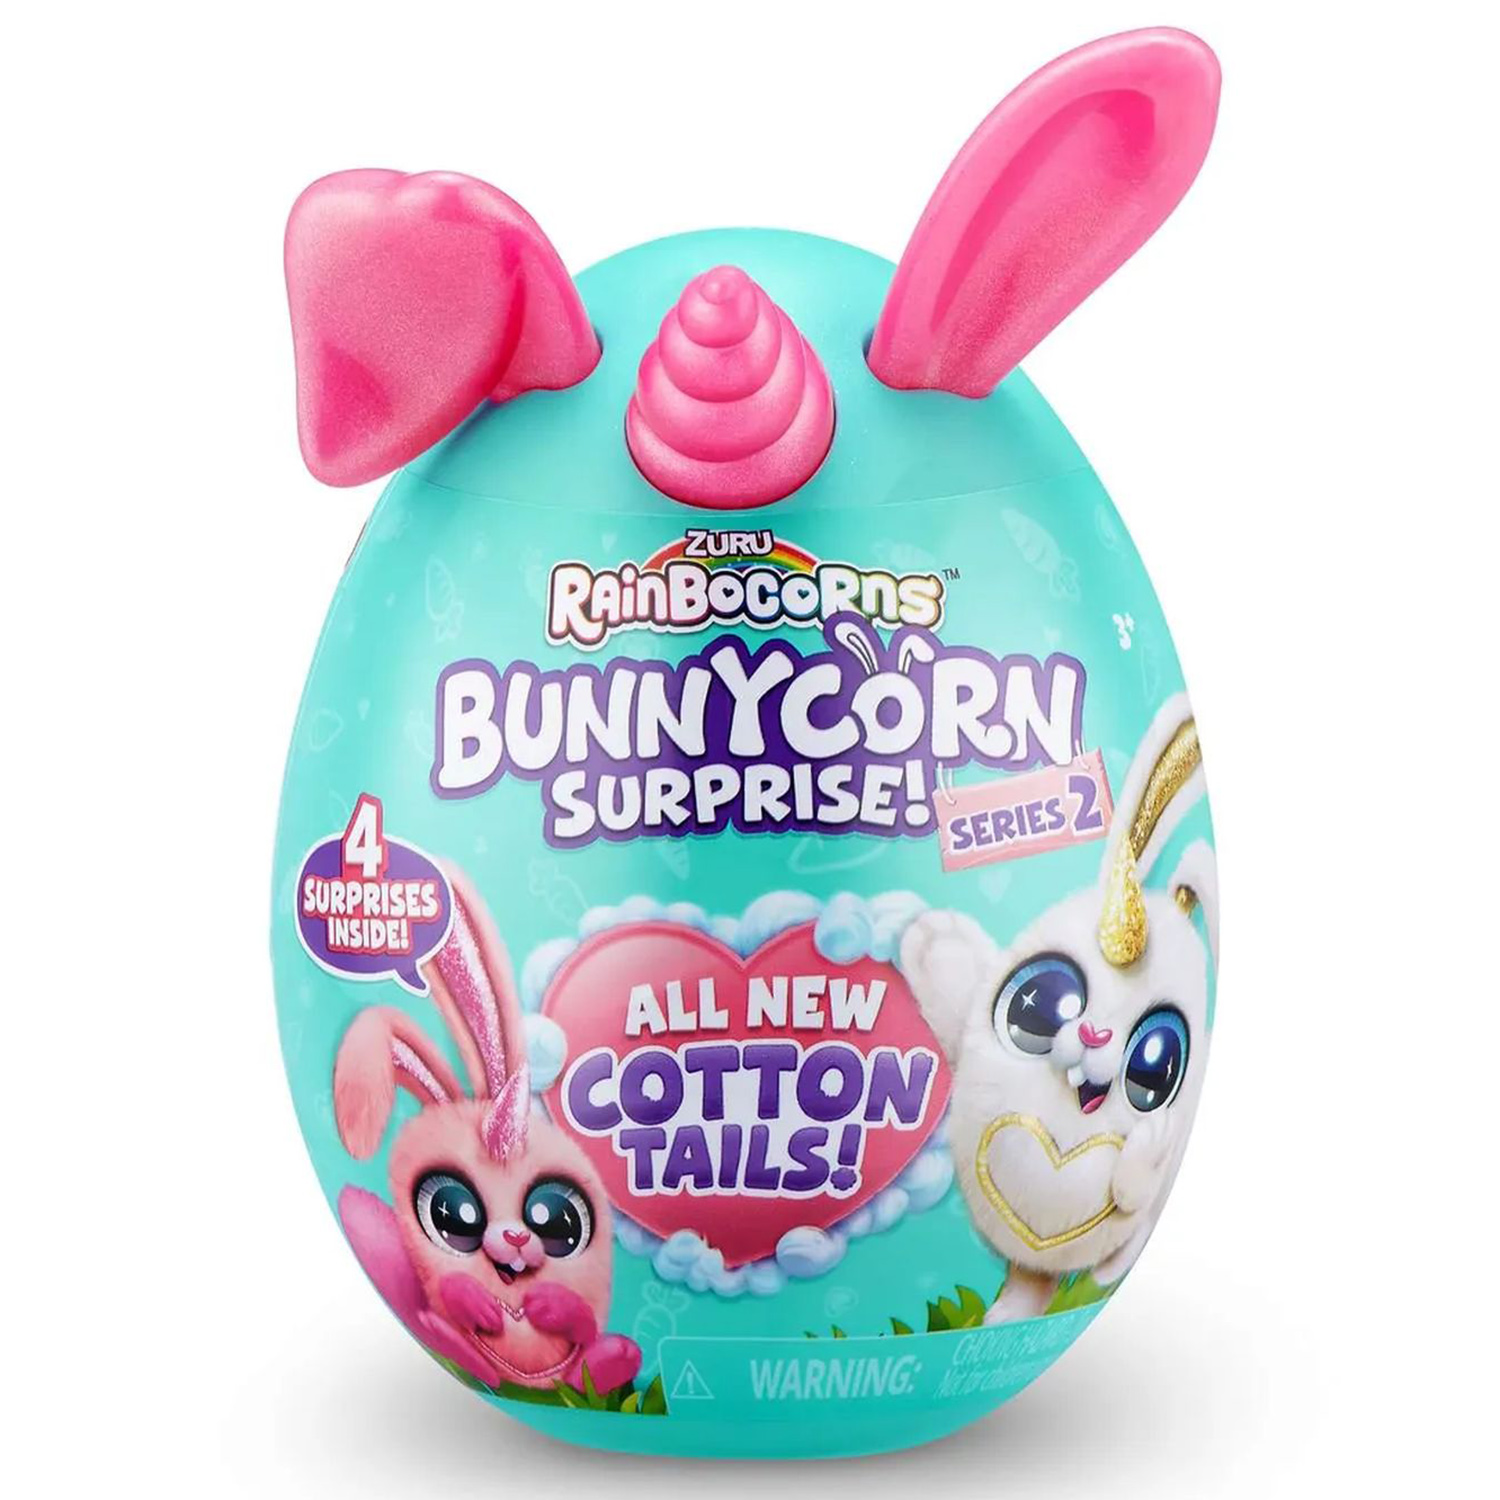 Игровой набор Zuru Rainbocorns Bunnycorn, сюрпризы в яйце серия 2, розовые ушки игровой набор сюрприз zuru rainbocorns puppycorn bow surprise в яйце белые уши и рог